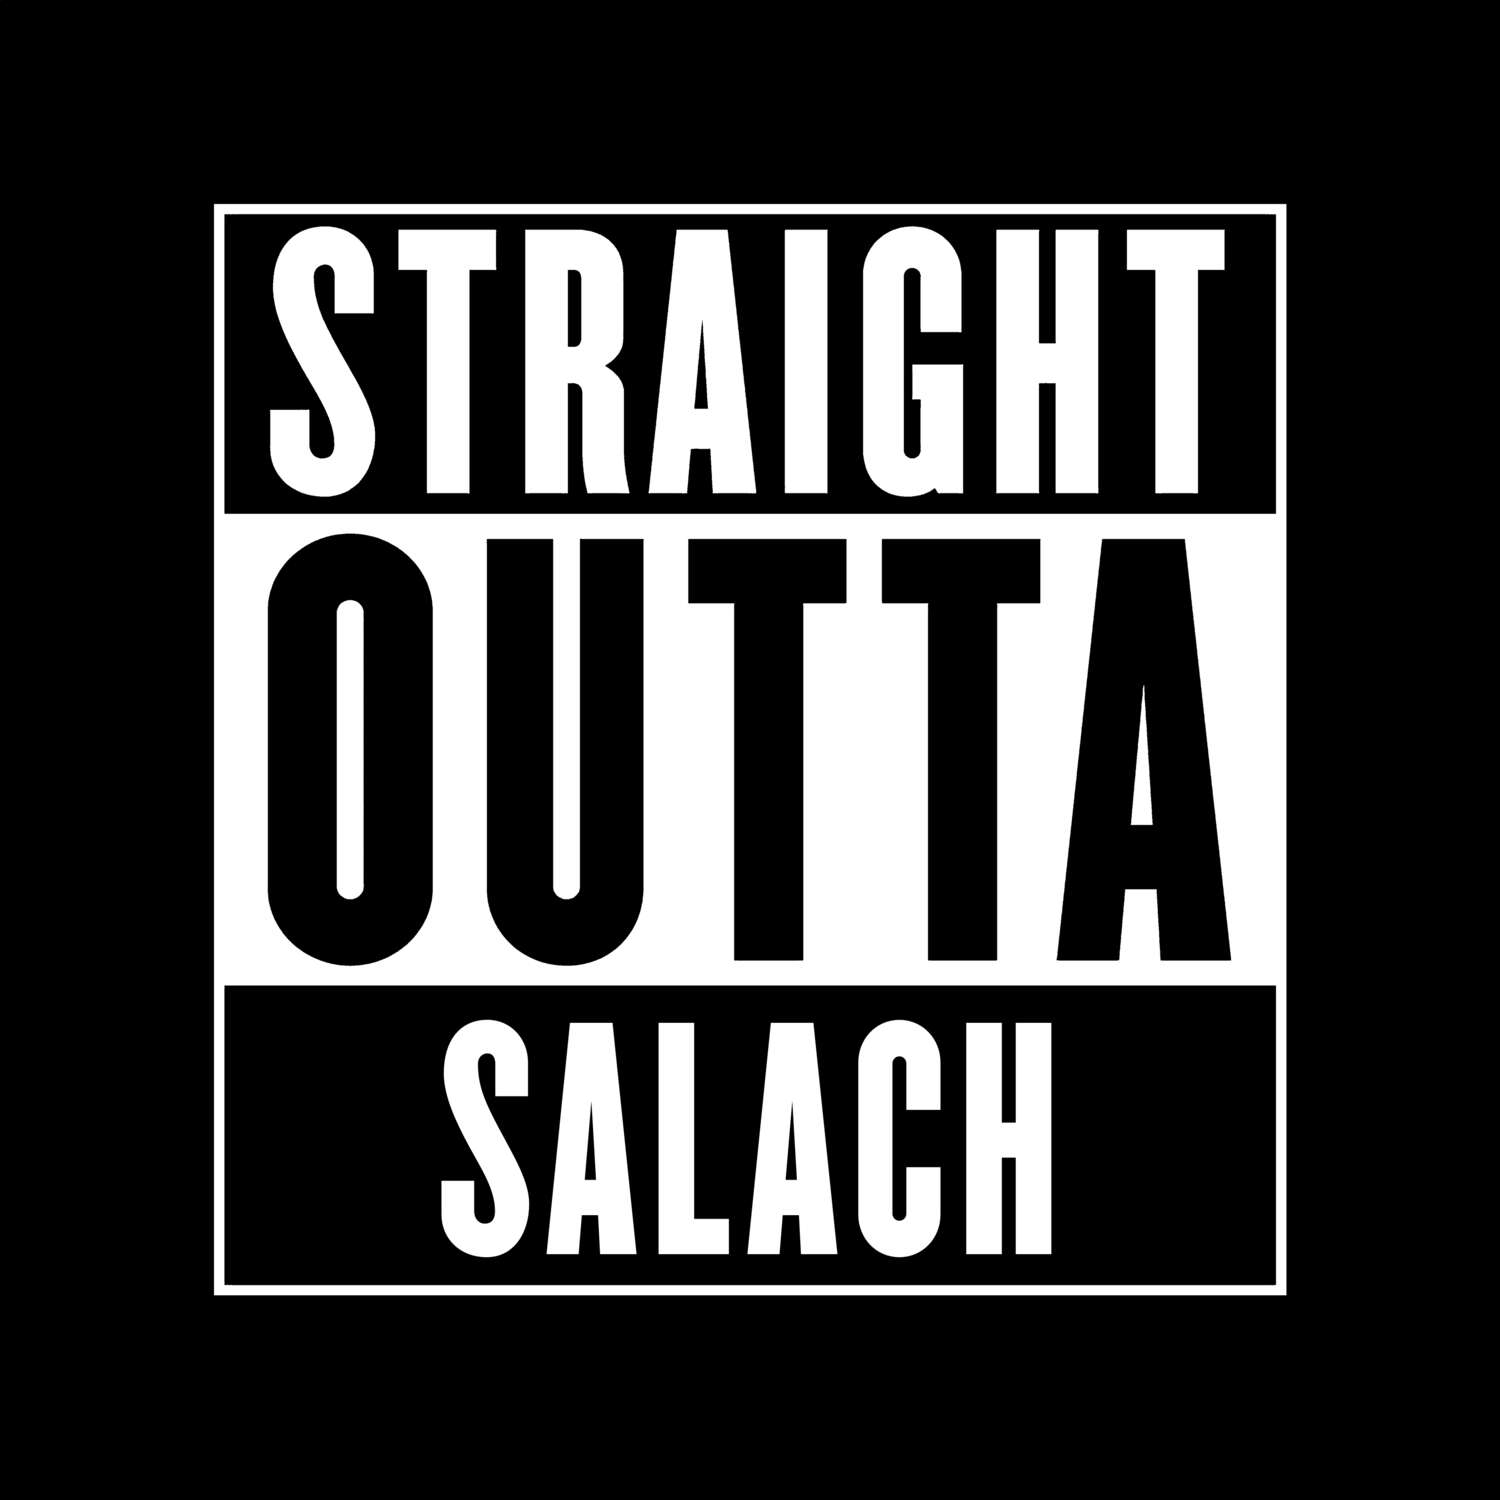 Salach T-Shirt »Straight Outta«